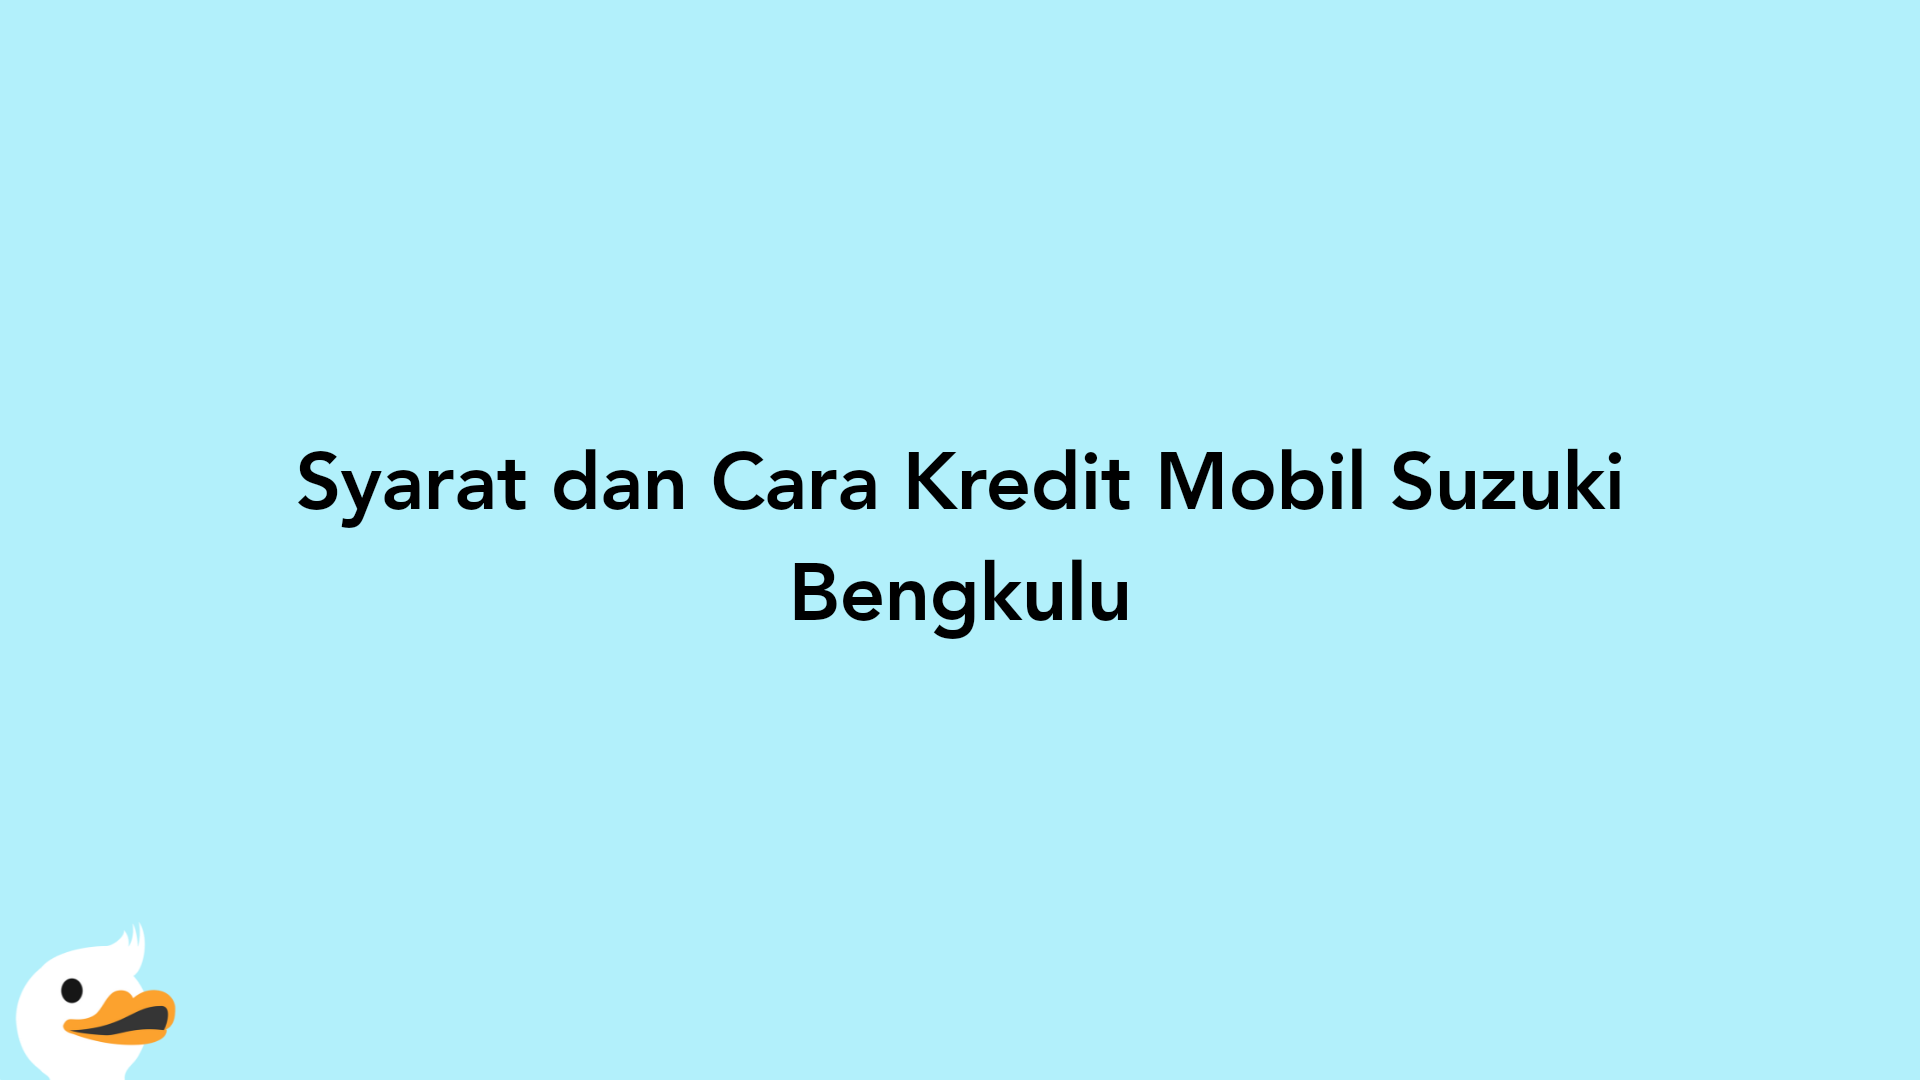 Syarat dan Cara Kredit Mobil Suzuki Bengkulu